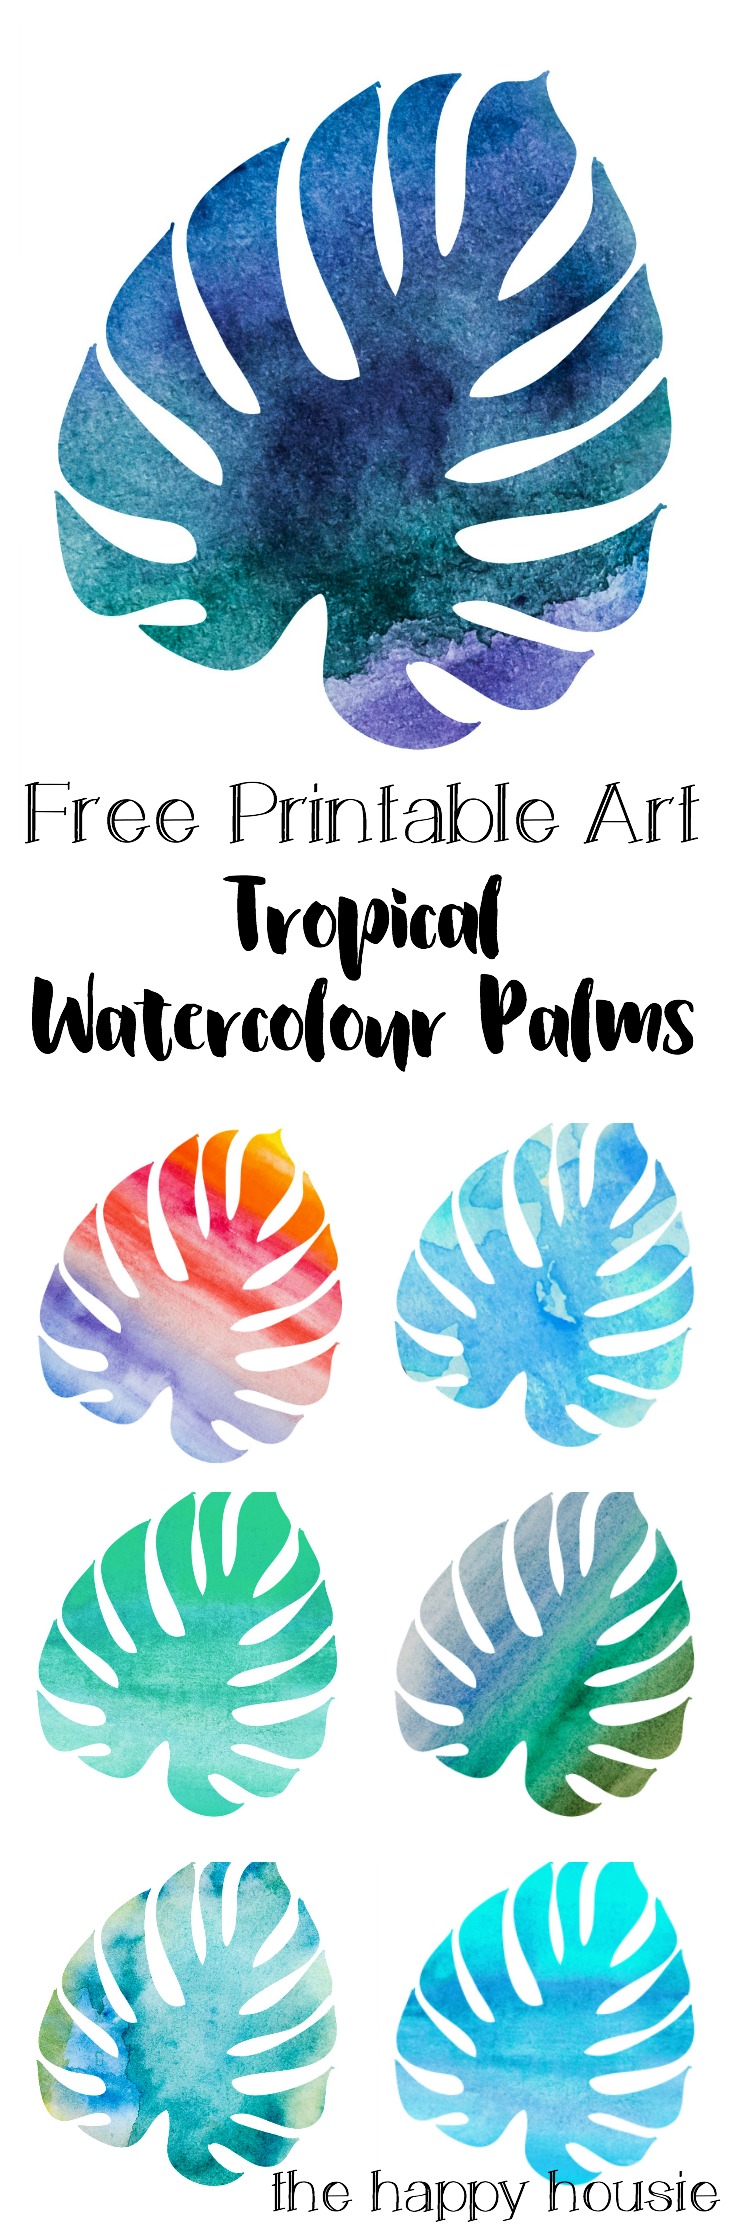 Free Printable Art Tropical Watercolour Palms print.